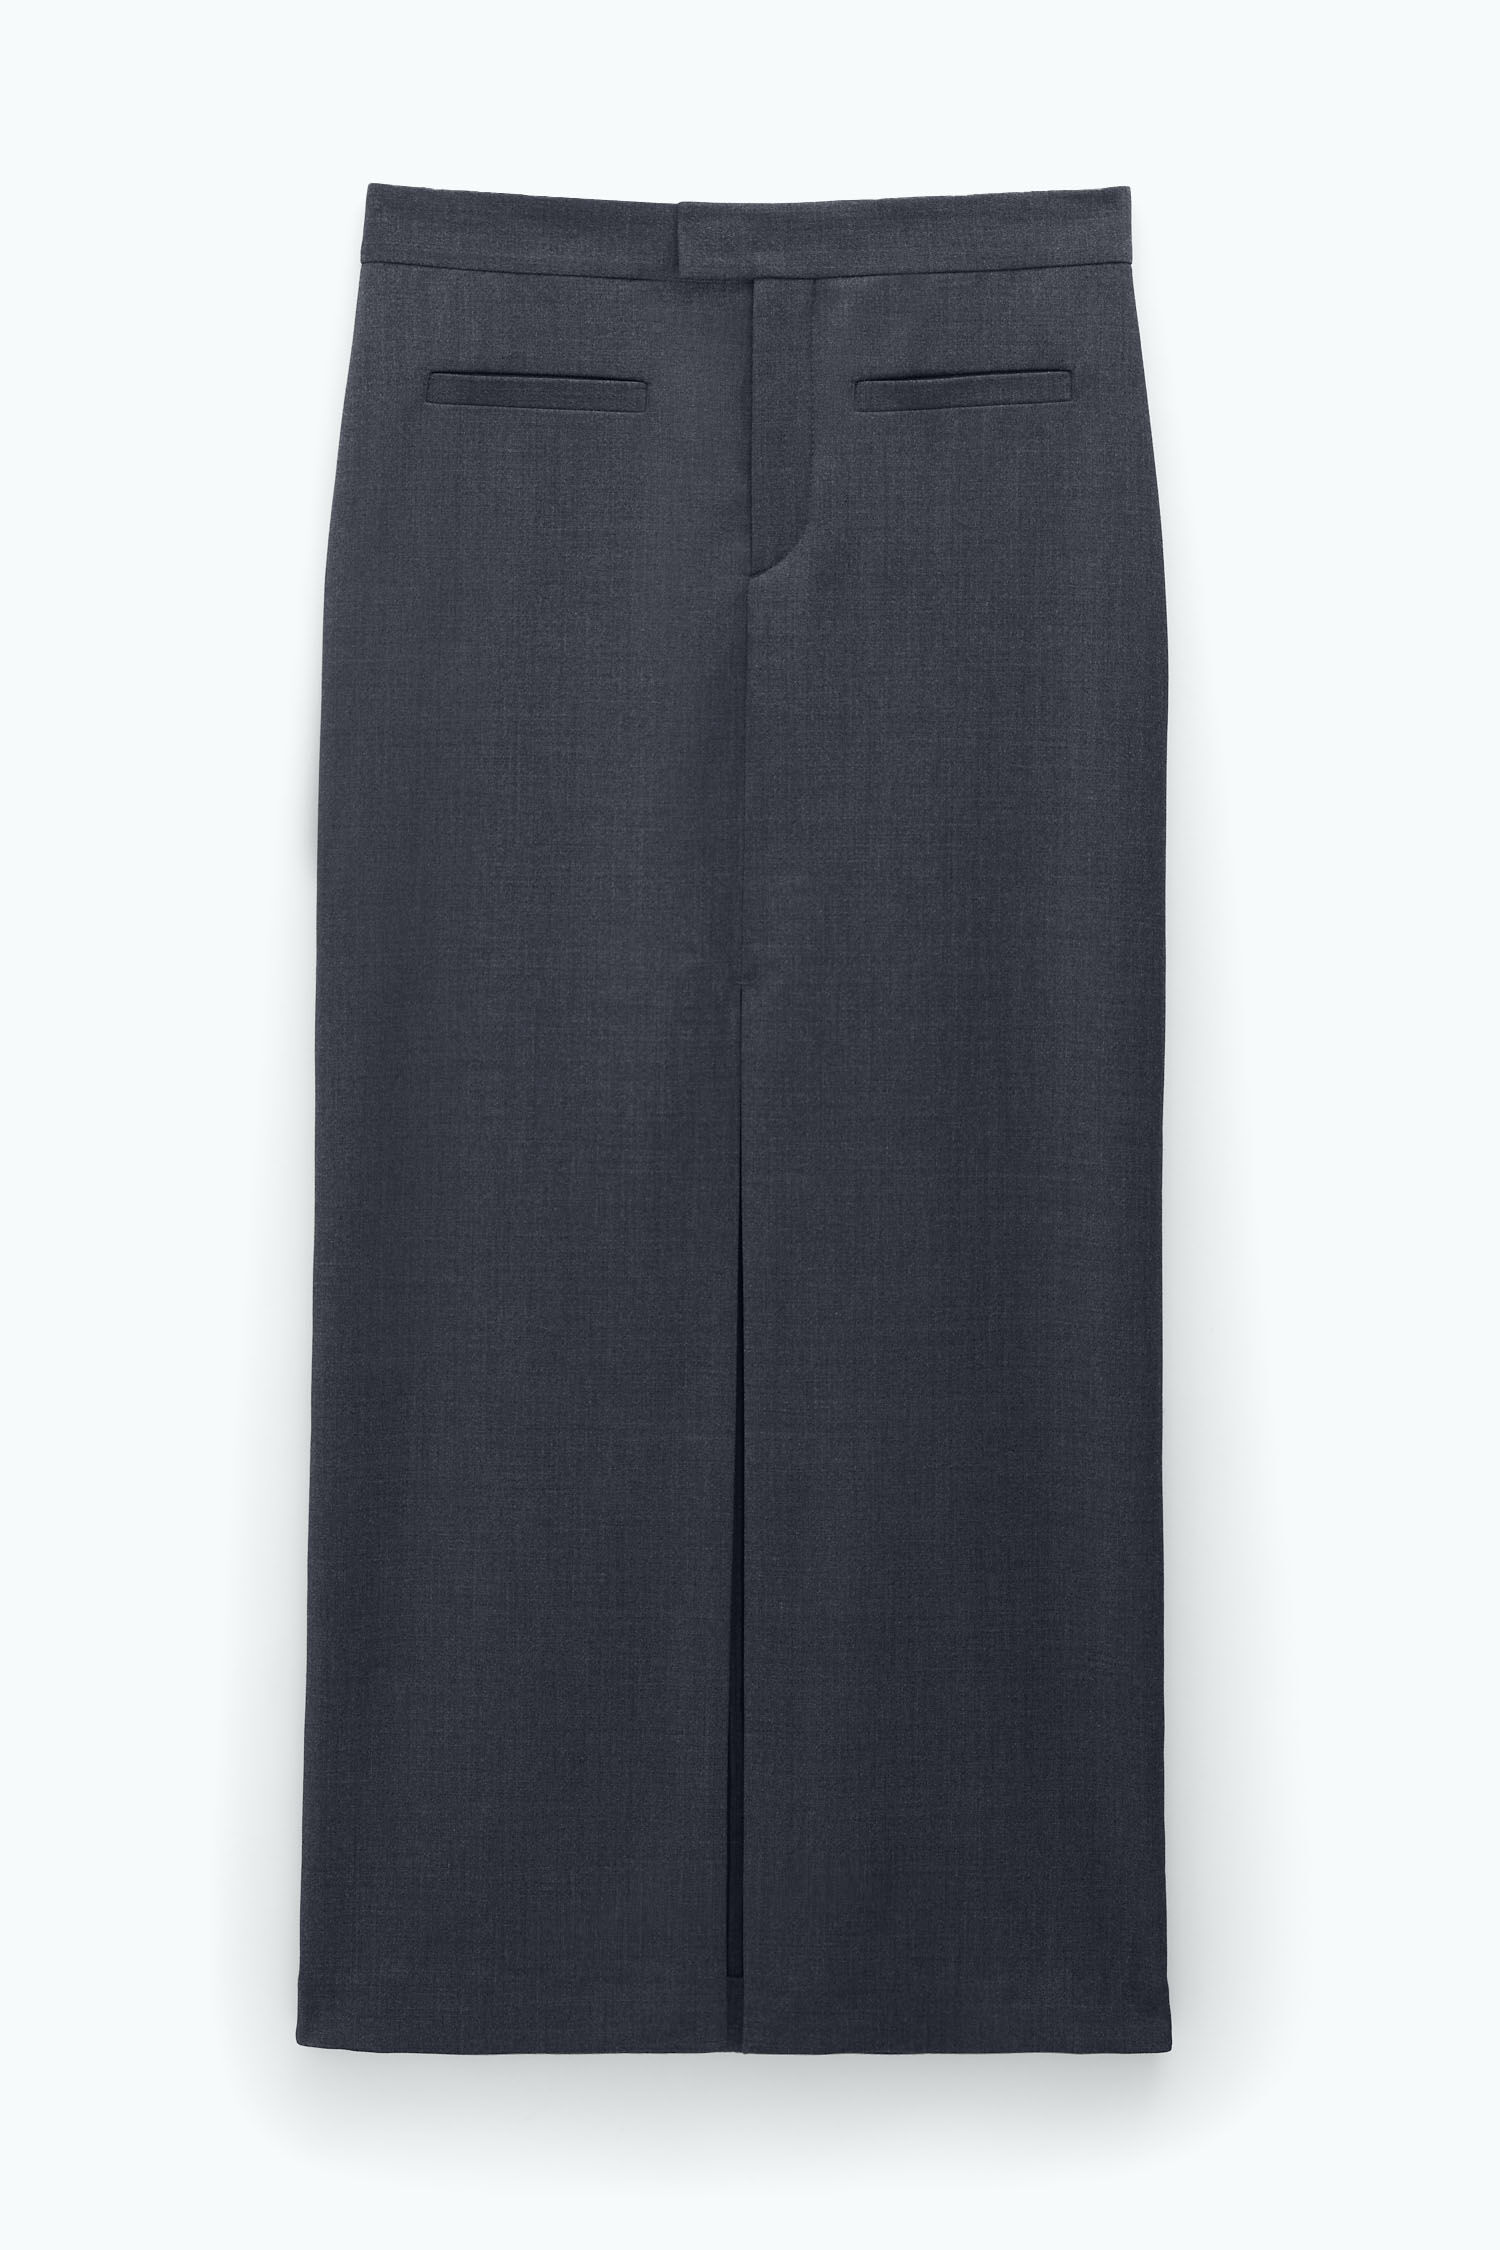 Long Tailored Skirt